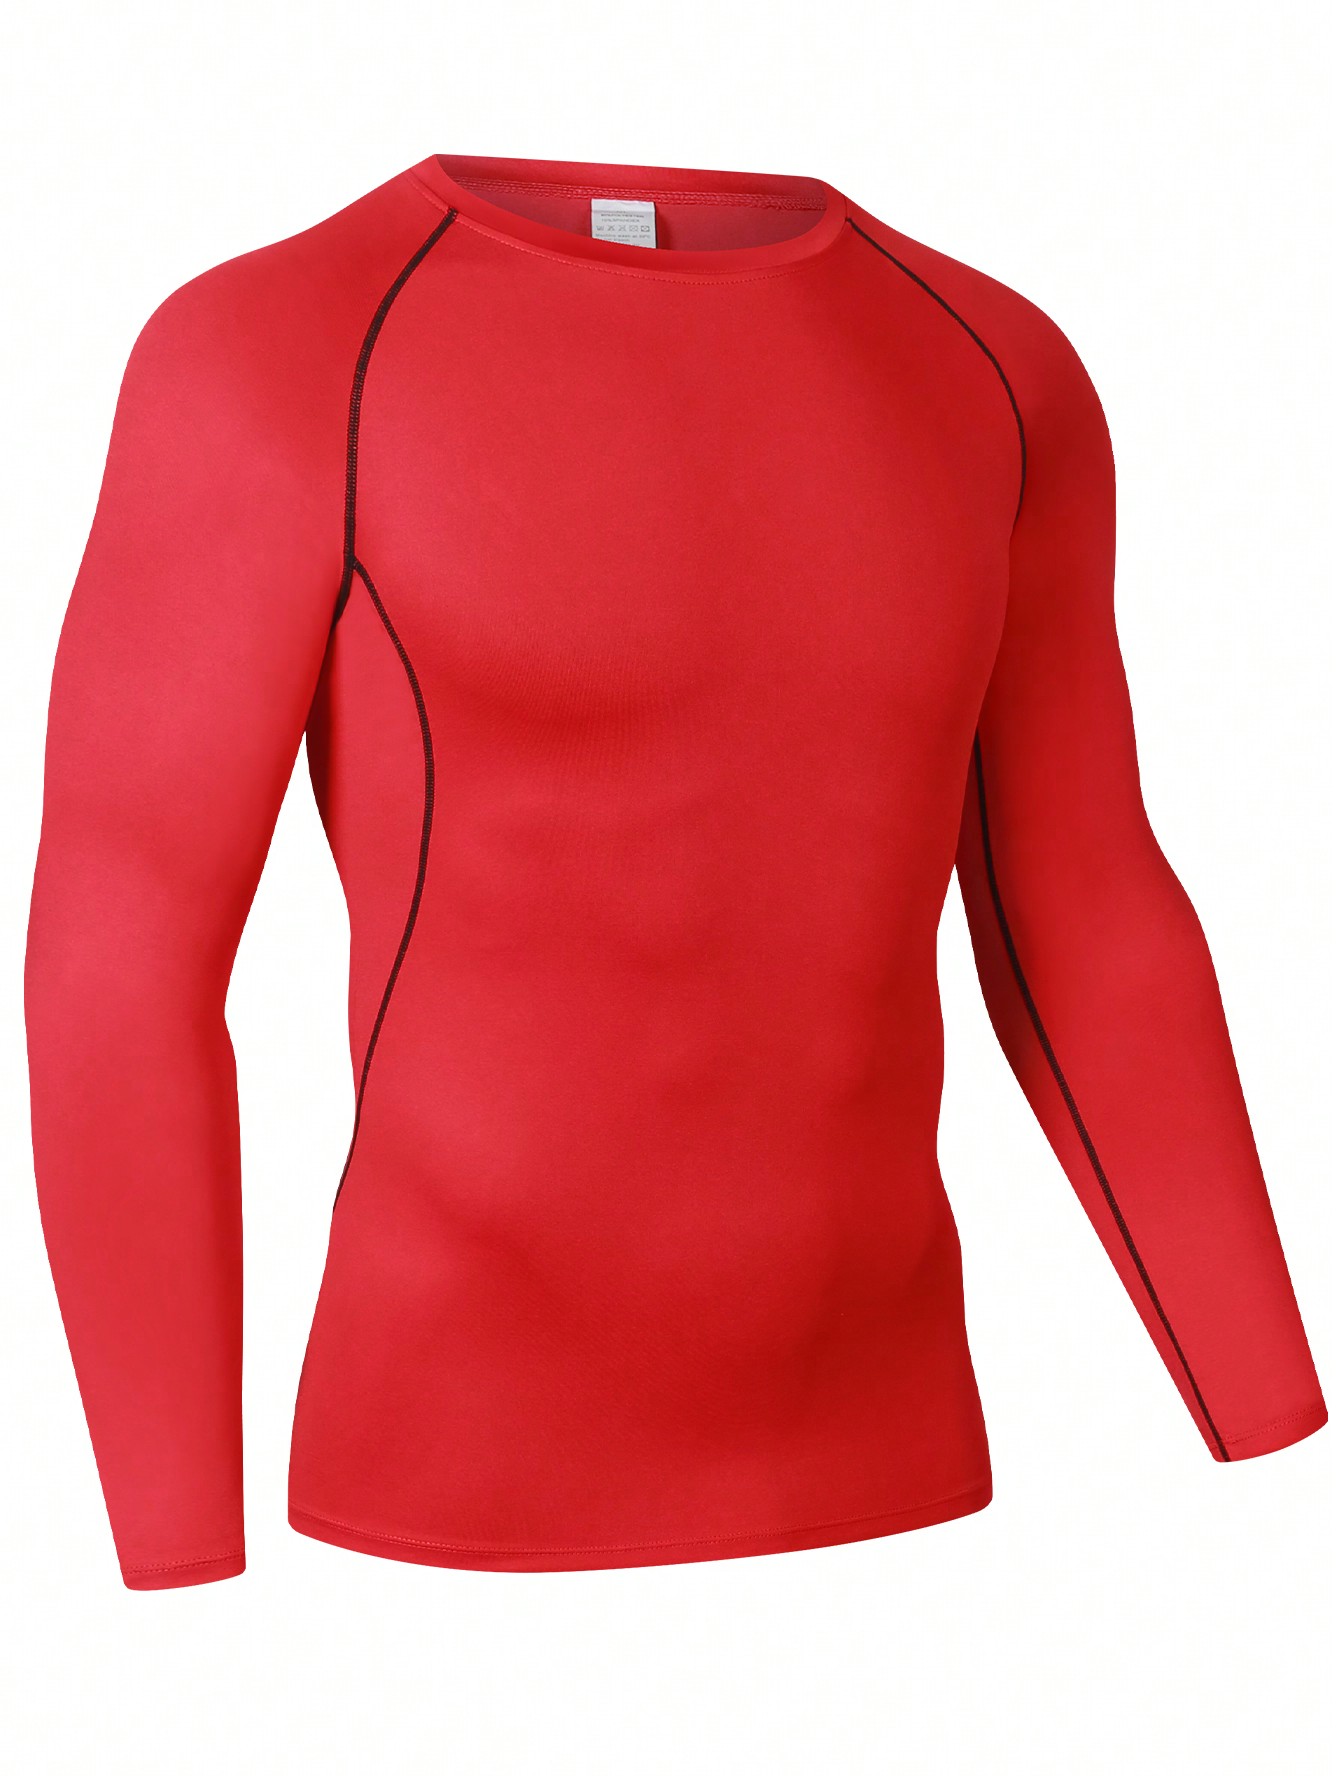 Мужская эластичная компрессионная рубашка для фитнеса с длинными рукавами, красный мужской теплый топ осенняя одежда топ с длинным рукавом rashgarda mma компрессионная рубашка для фитнеса терморубашка быстросохнущая трениро